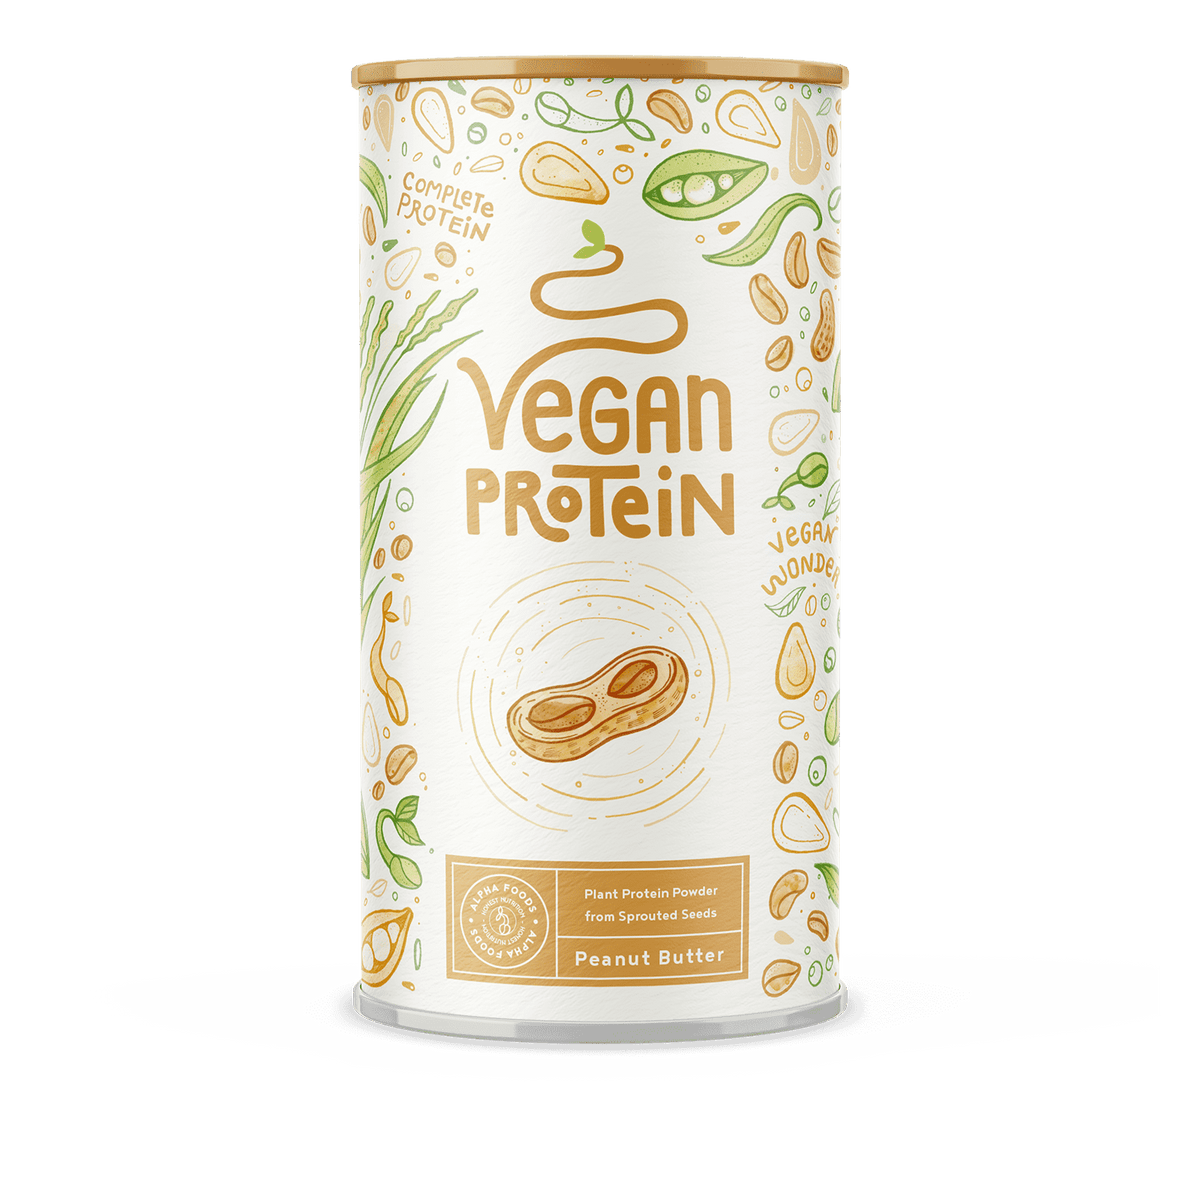 Proteine vegane - Burro d'arachidi